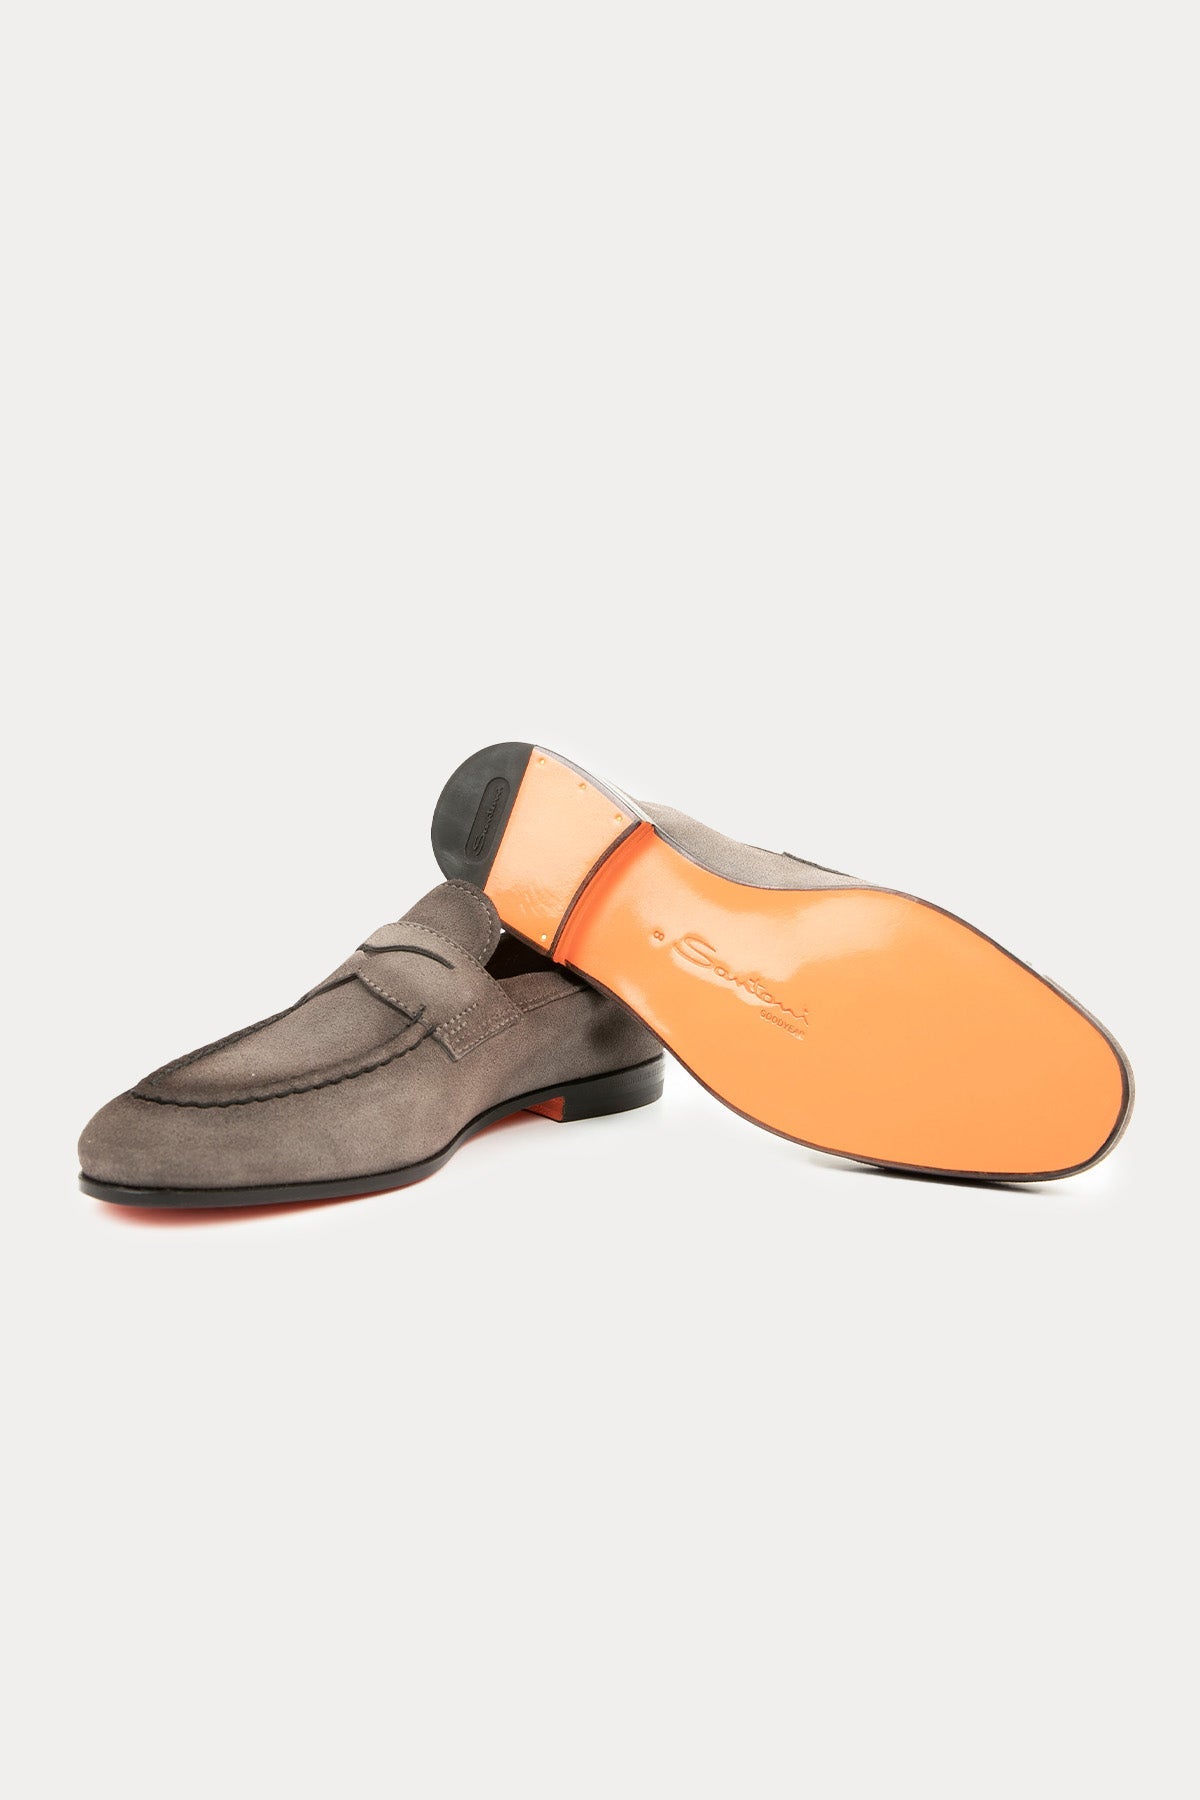 Santoni Goodyear Taban Nubuk Deri Loafer Ayakkabı